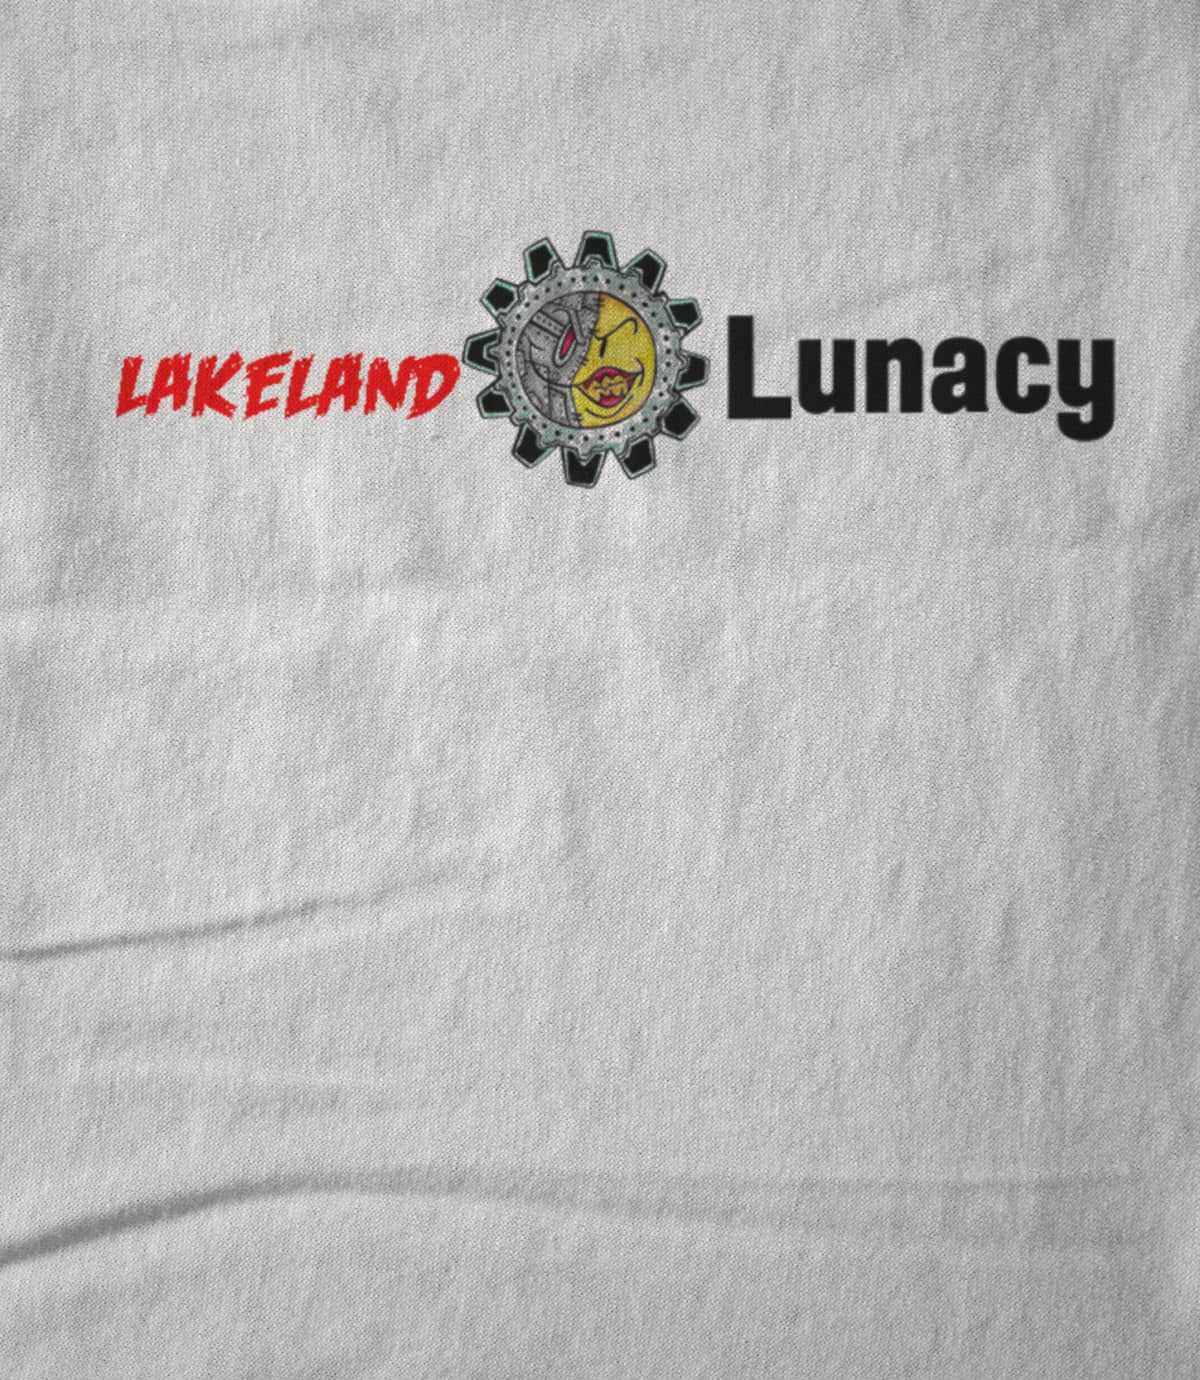 LakelandLunacy